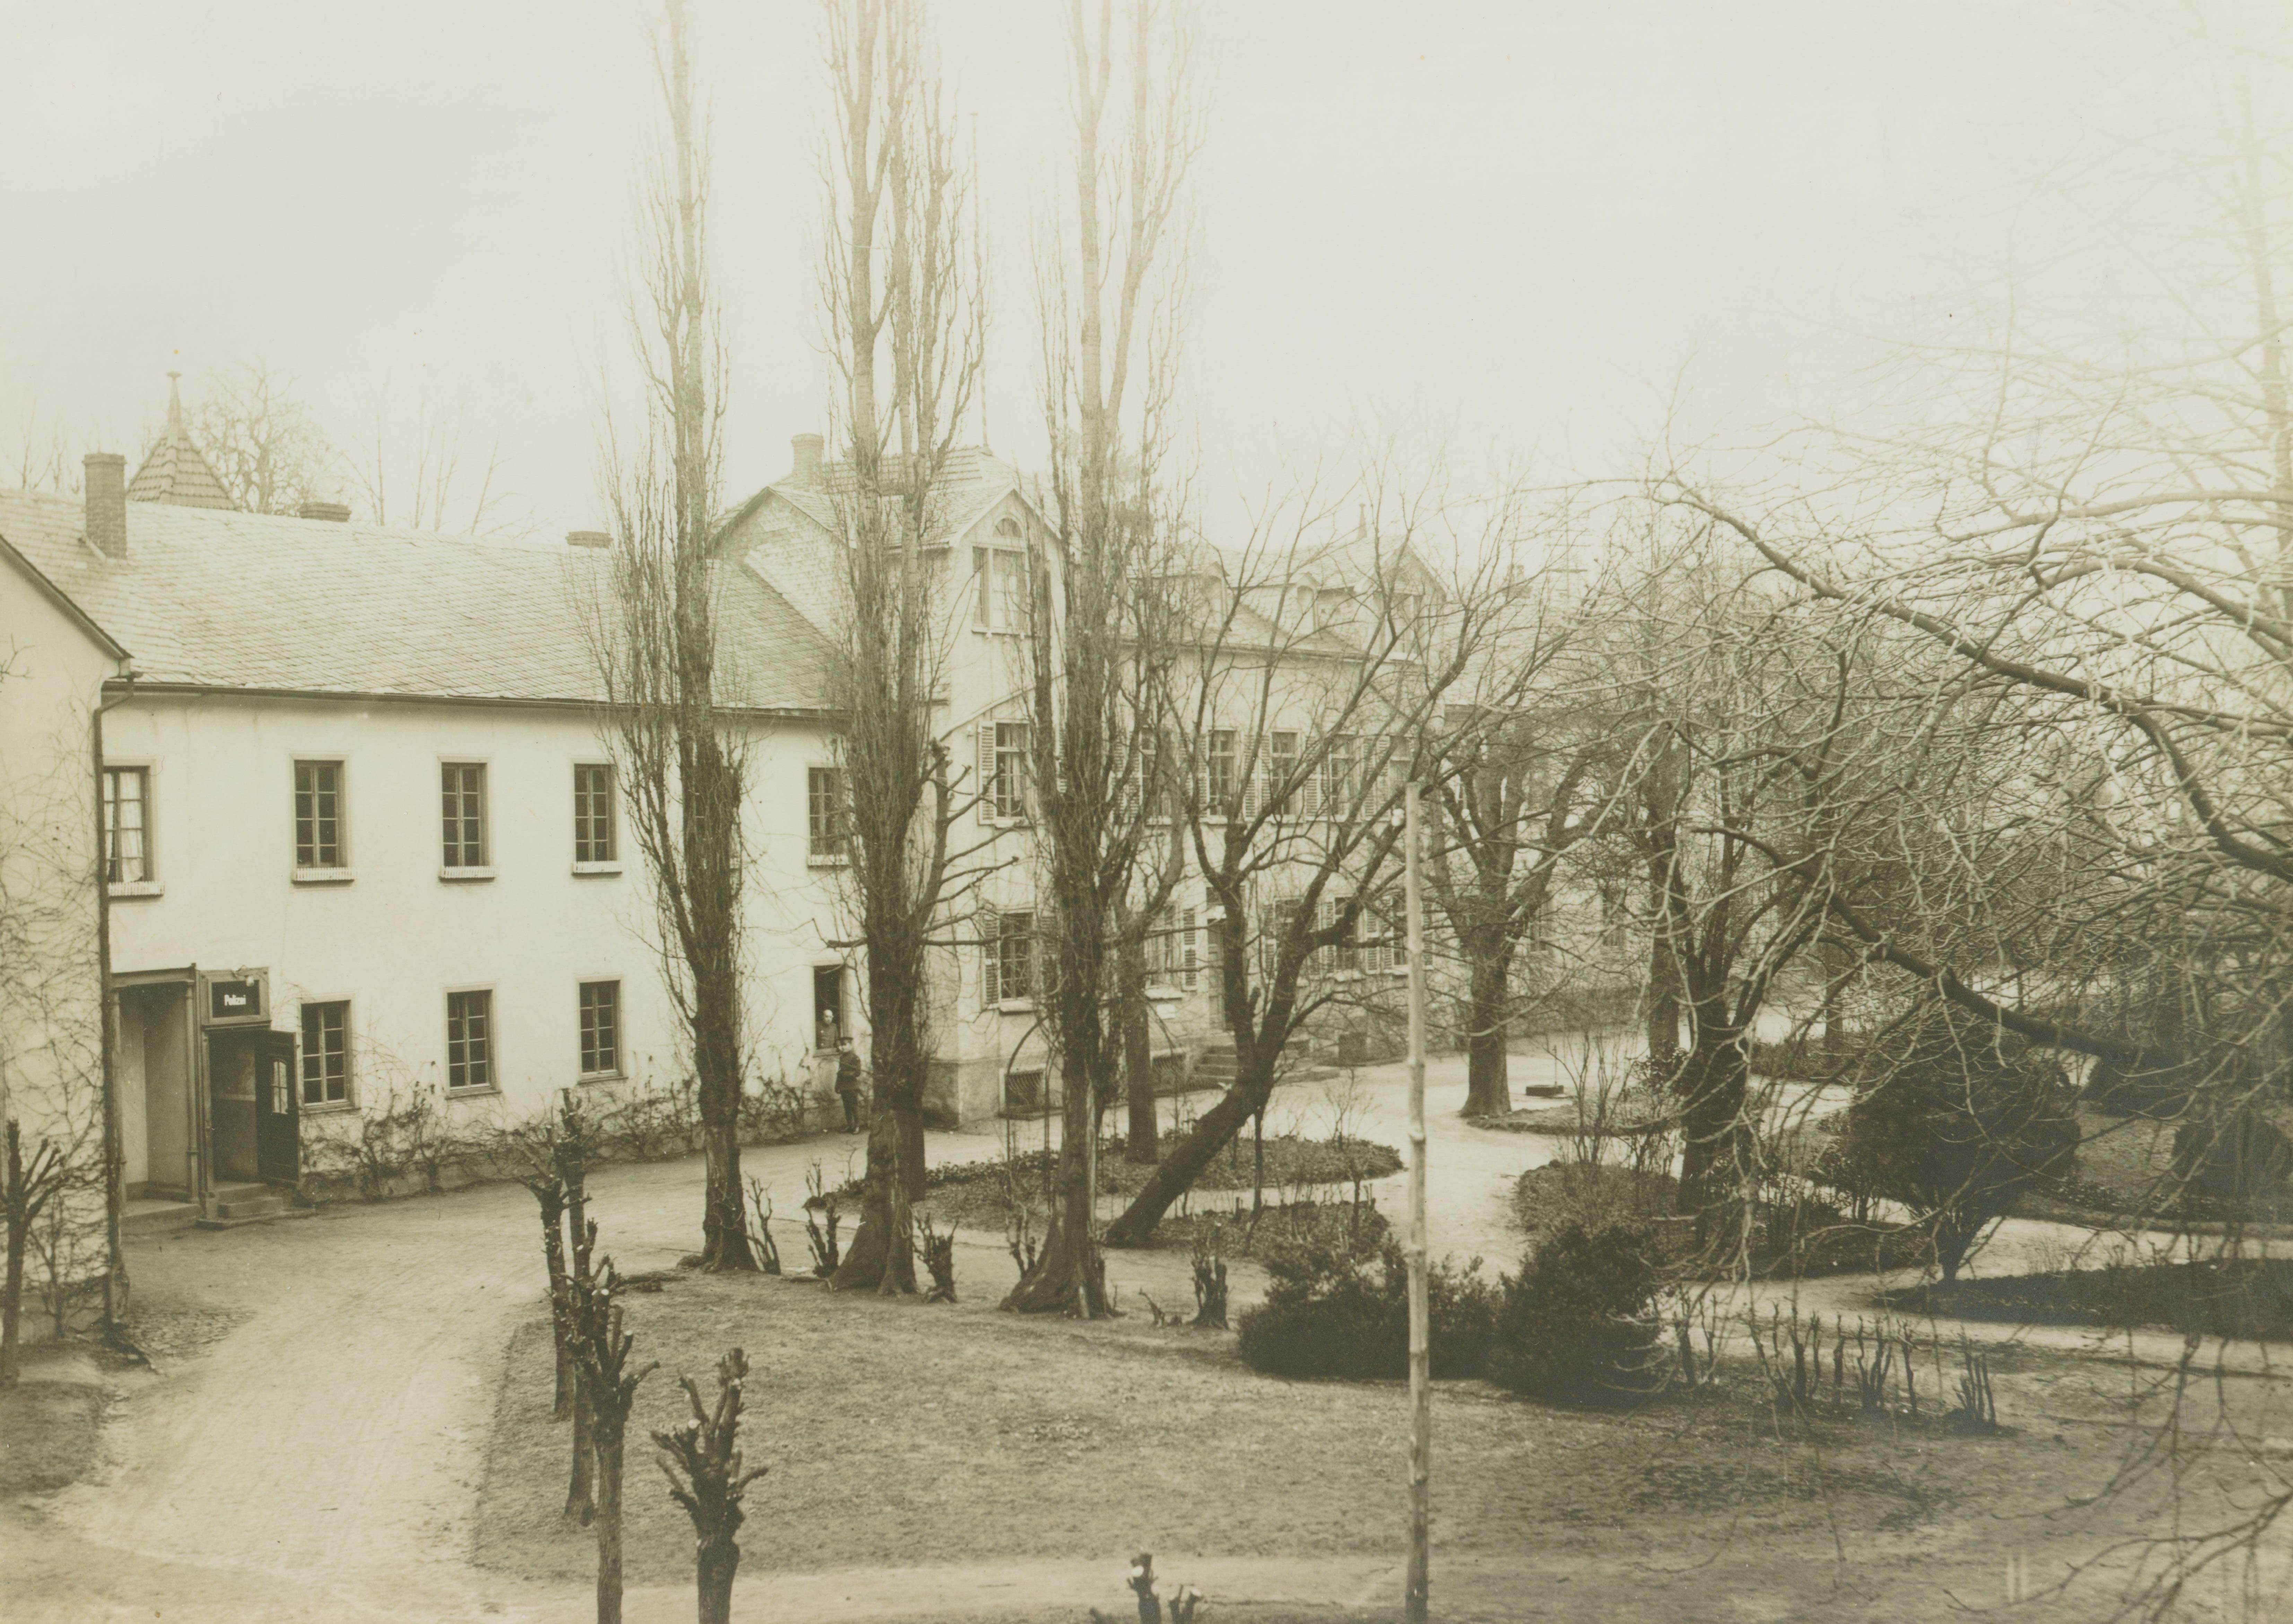 Dr. Erlenmeyer’sche Anstalten für Gemüts- und Nervenkranke, Bendorf am Rhein 1921/22 (REM CC BY-NC-SA)